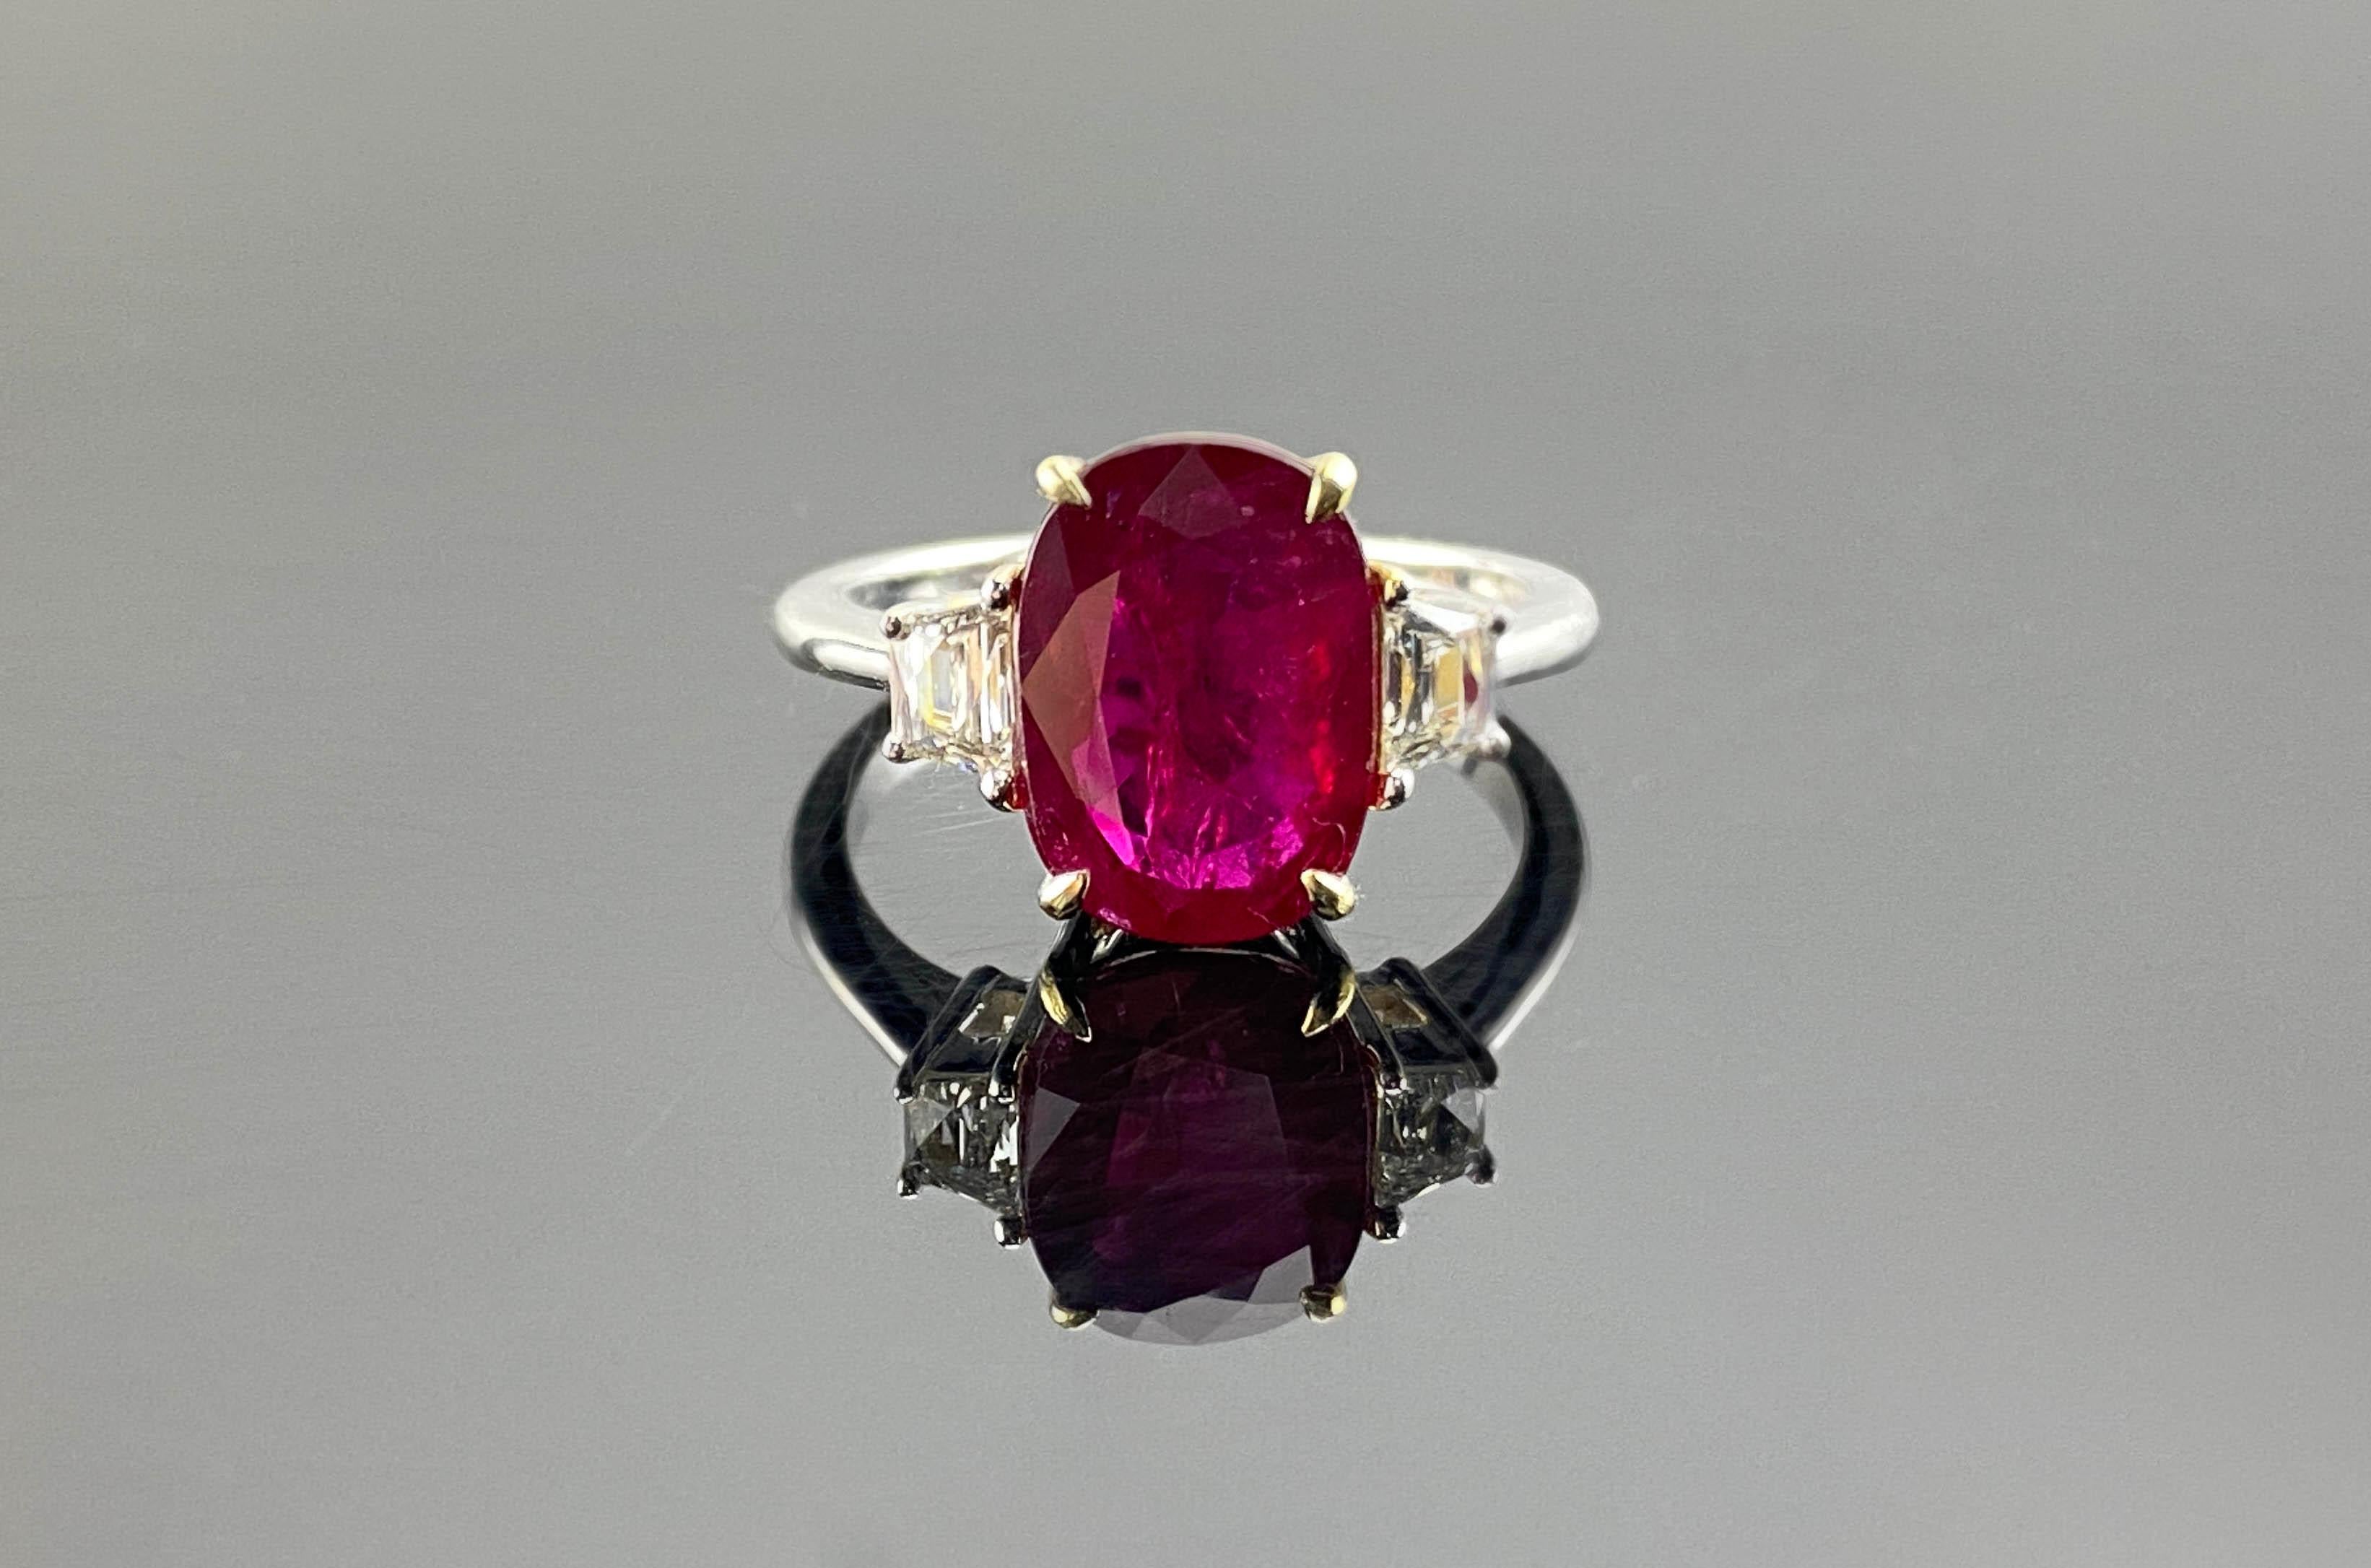 Un rubis birman classique de 3,74 carats, avec des diamants blancs en forme de trapèze, le tout serti dans de l'or blanc massif 18K. La pierre centrale, un rubis de forme ovale, est transparente, d'une belle couleur rouge vif et d'un grand éclat.
La